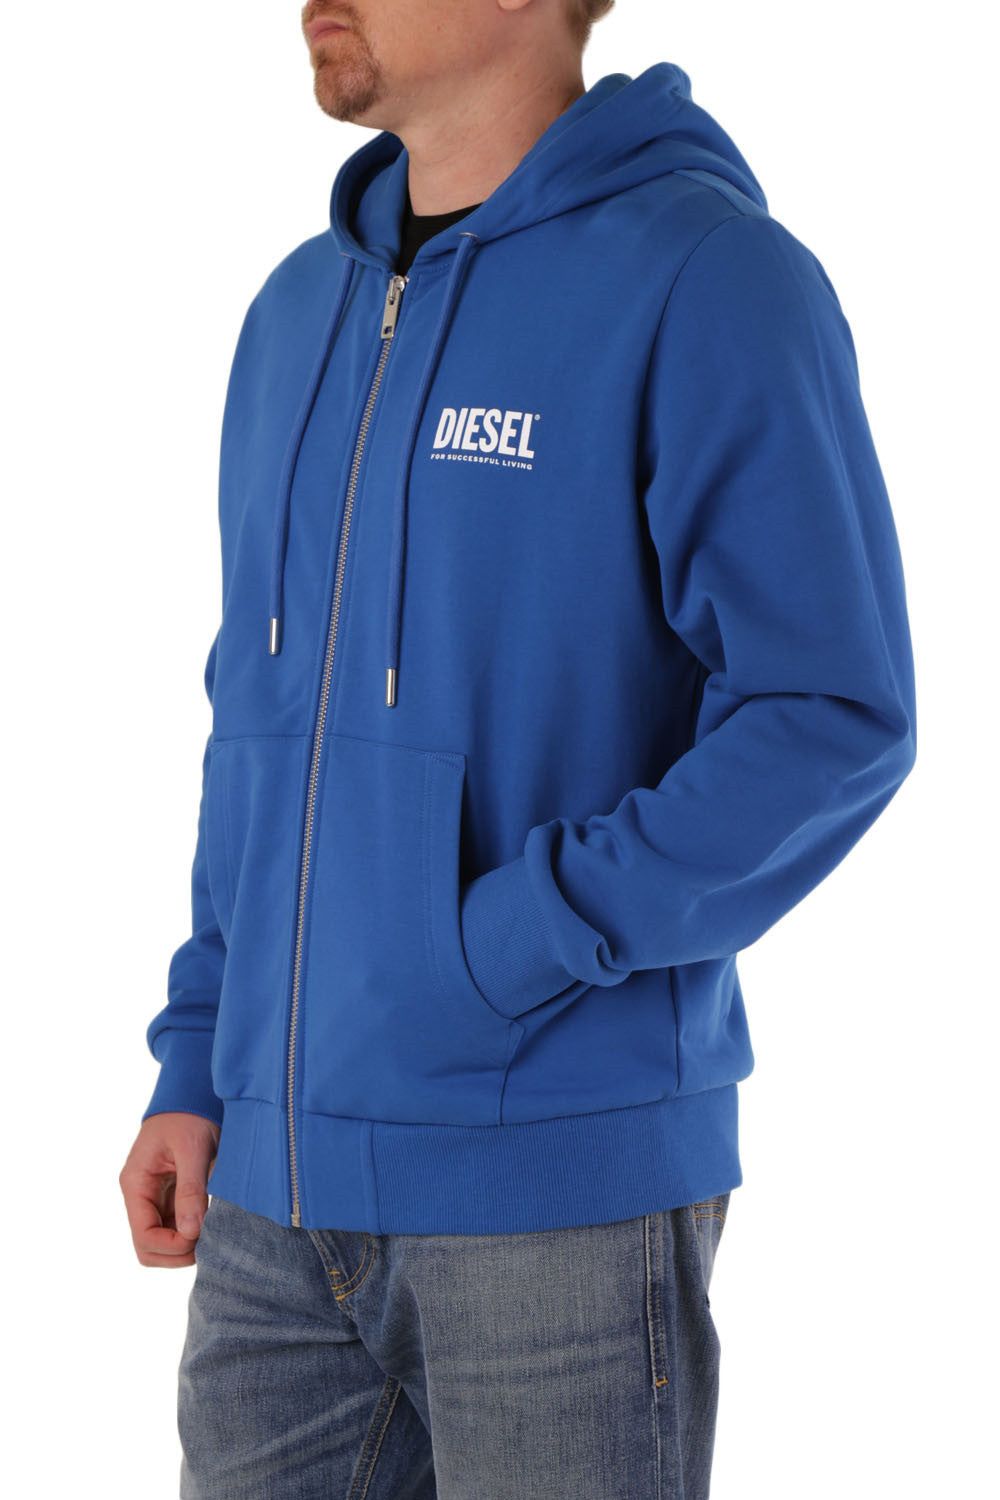 Brand: Diesel   Gender: Men   Type: Sweatshirts   Color: Blue   Pattern: Print   Sleeves: Long Sleeve   Collar: Hood   Fastening: with Zip   Season: All Seasons